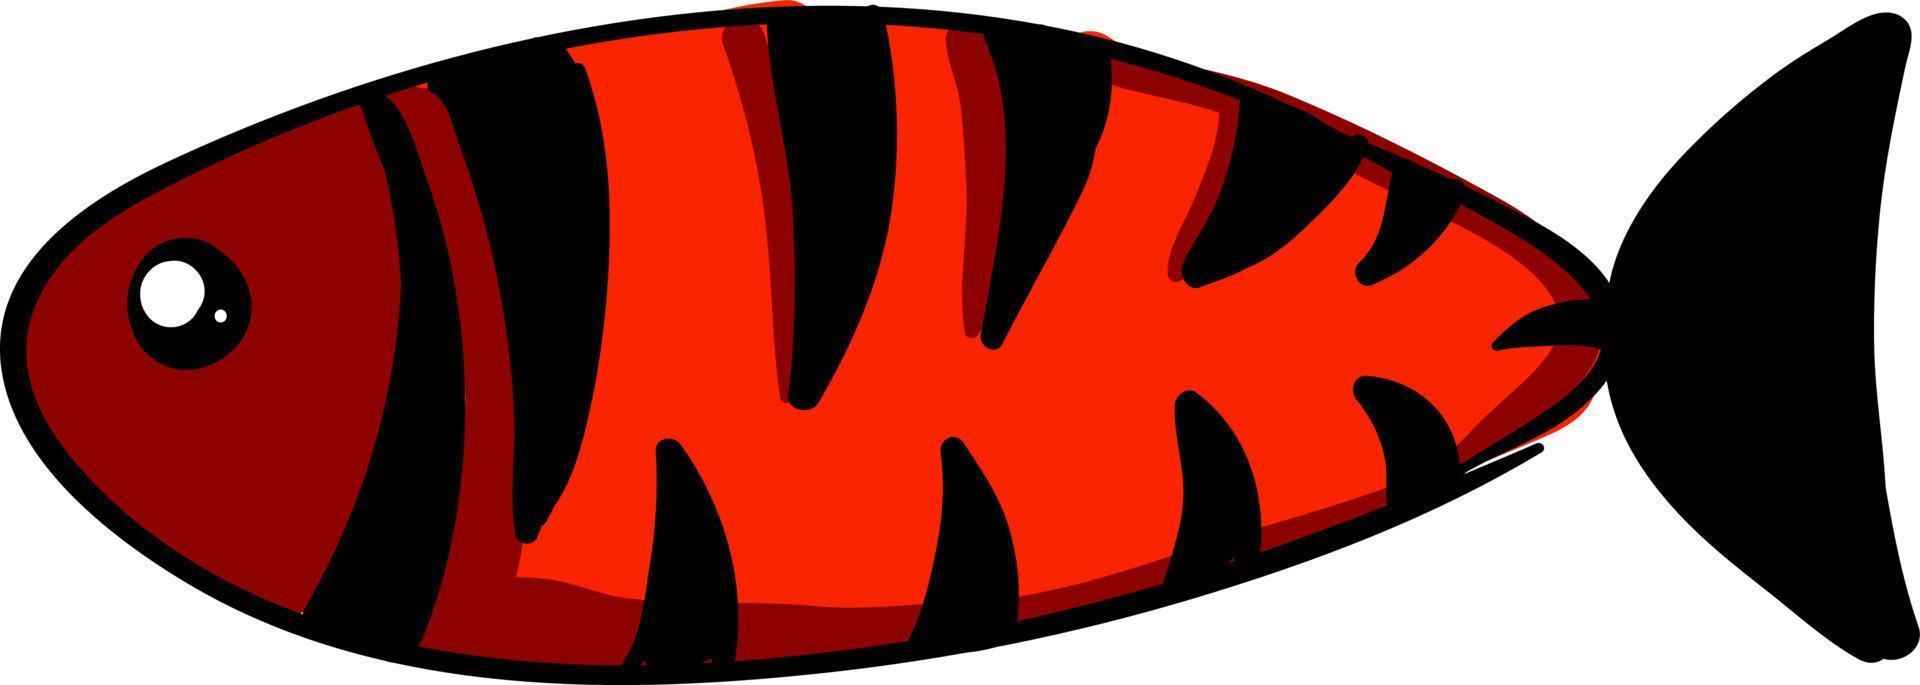 peixe vermelho com listras pretas, ilustração, vetor em fundo branco.